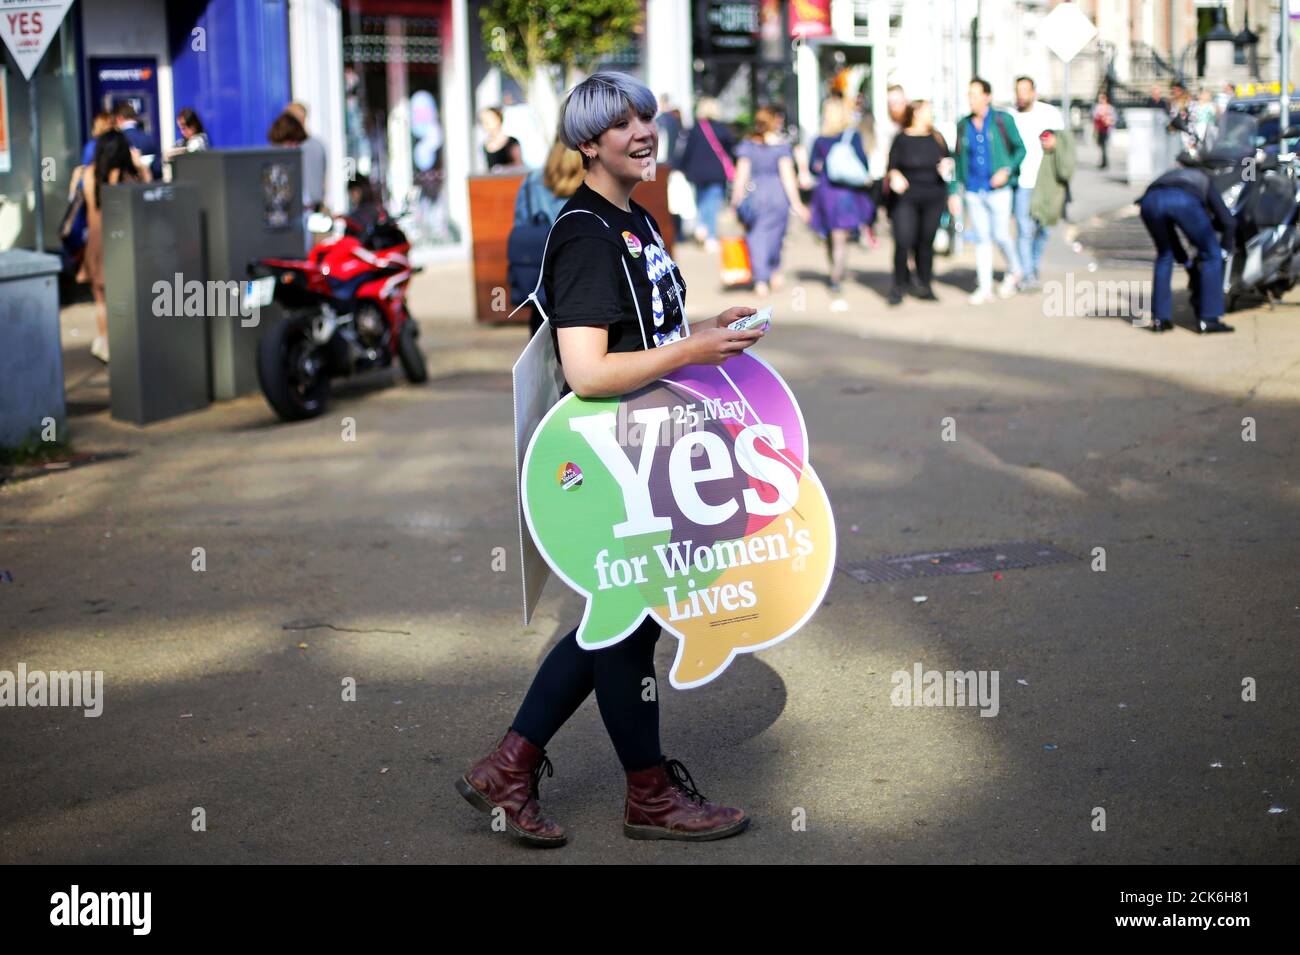 Una mujer lleva un cartel cuando Irlanda celebra un referéndum sobre la liberalización de las leyes de aborto, en Dublín, Irlanda, el 25 de mayo de 2018. REUTERS/Max Rossi Foto de stock